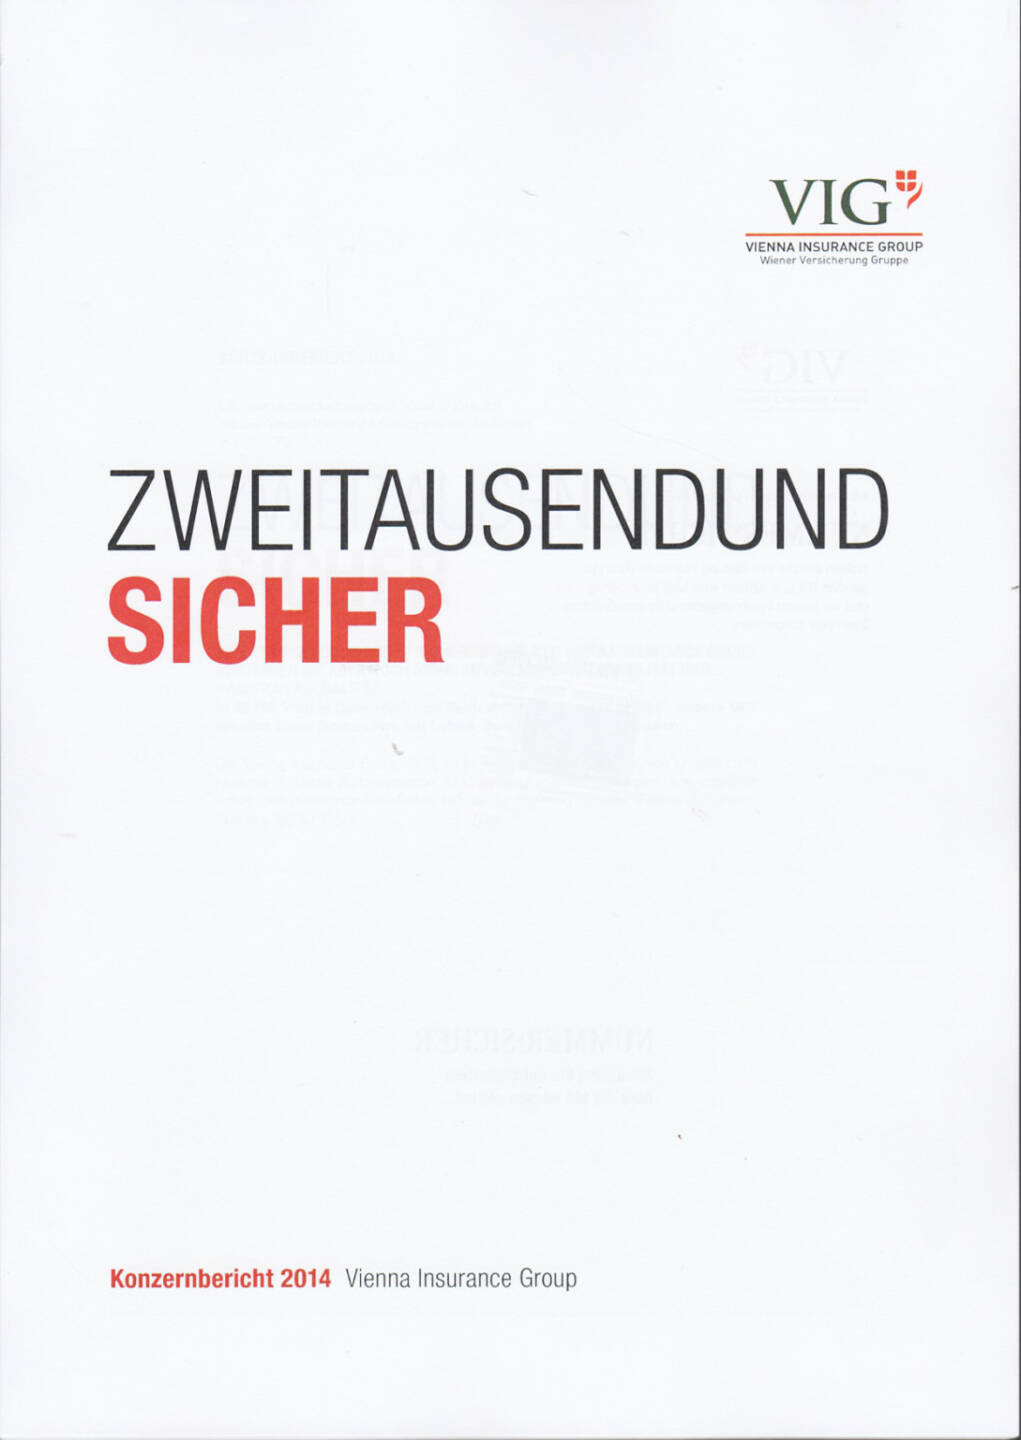 Vienna Insurance Group Konzernbericht 2014 - http://boerse-social.com/financebooks/show/vienna_insurance_group_konzernbericht_2014